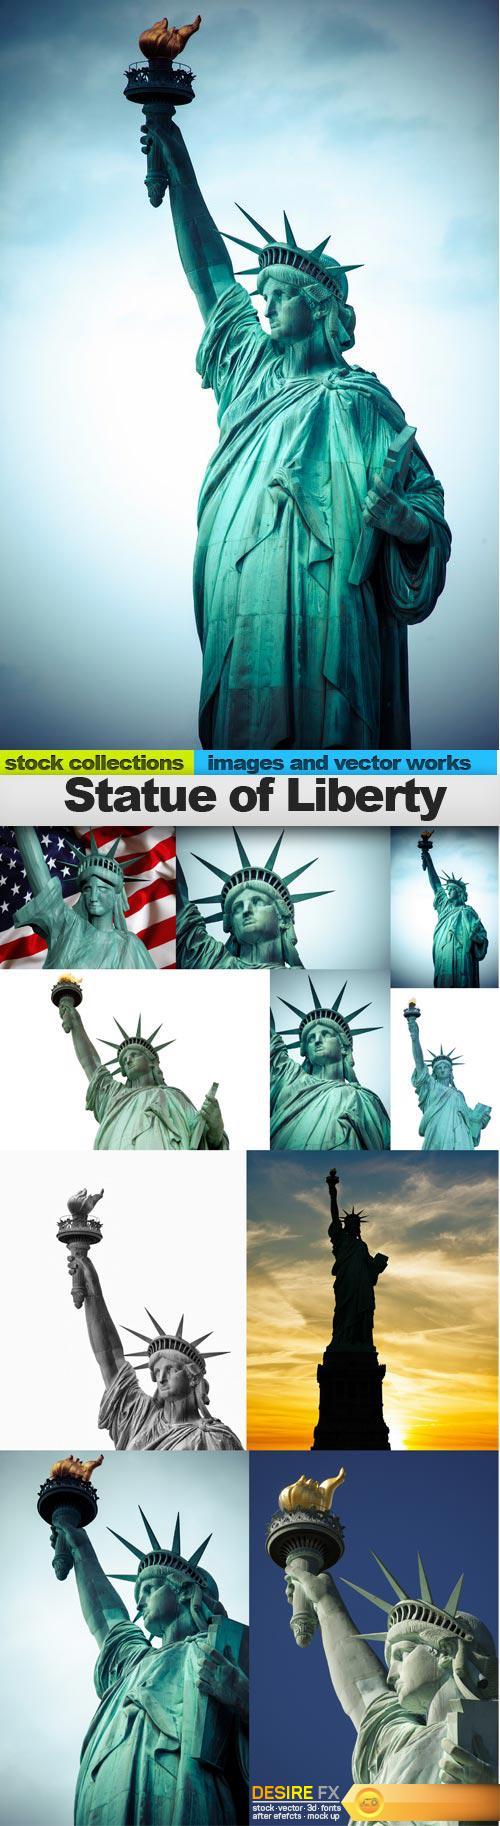 Statue of Liberty, 10 x UHQ JPEG